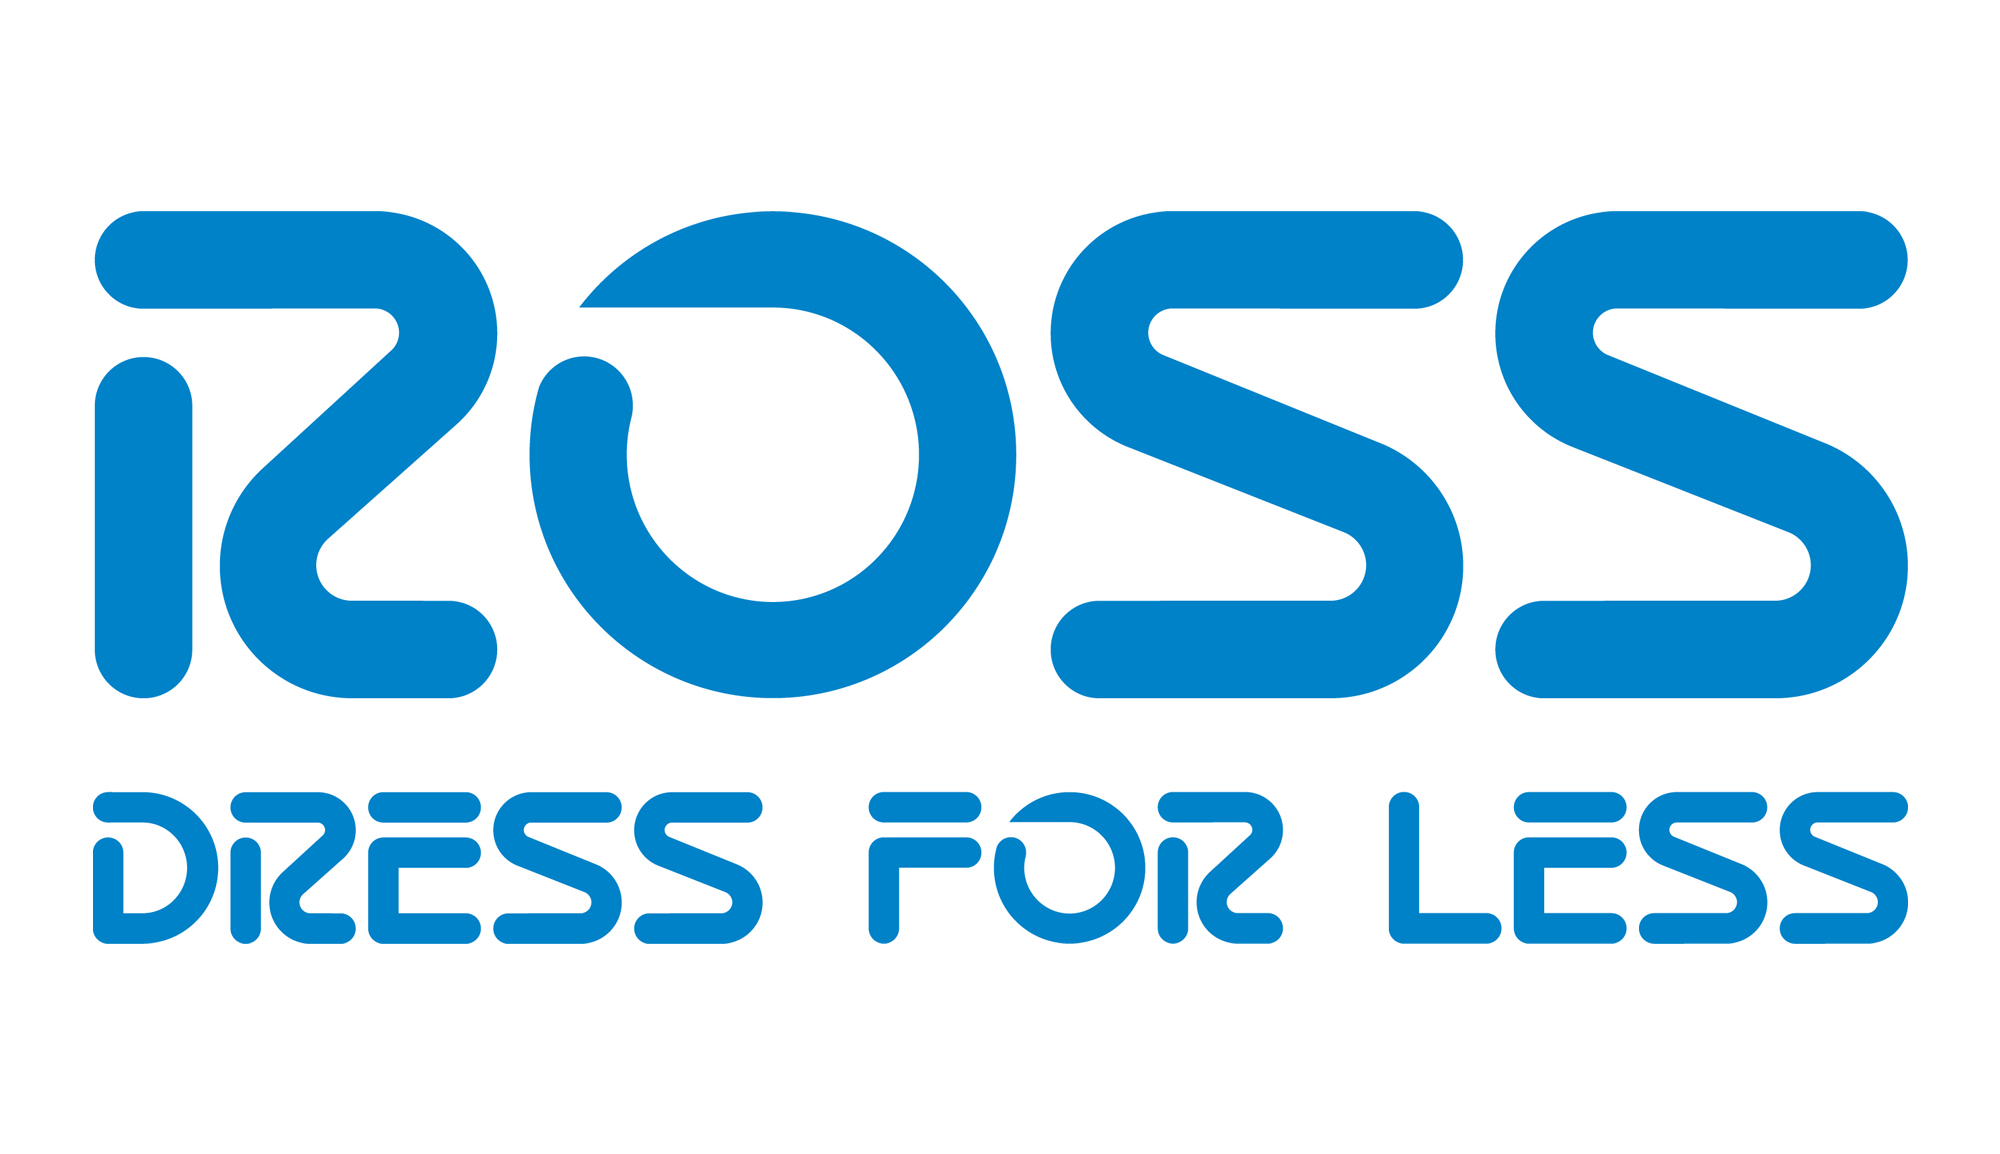 Ross Dress for Less logo